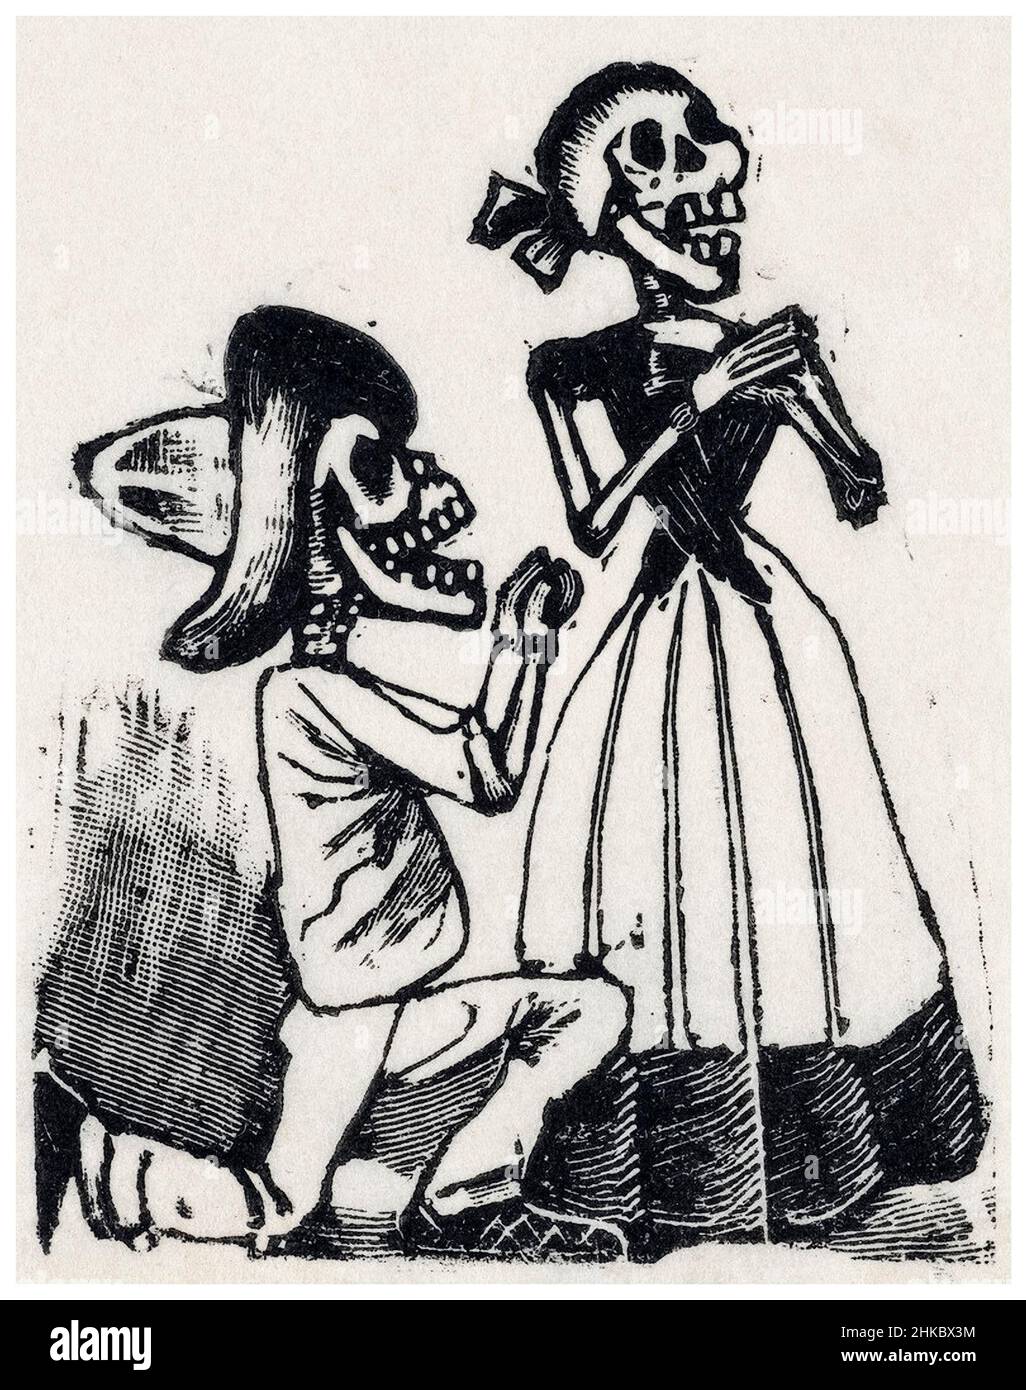 Un squelette mâle sur ses genoux devant un squelette femelle, (vignette pour la fête des morts), gravure de plaque métallique par José Guadalupe Posada, 1890-1910 Banque D'Images